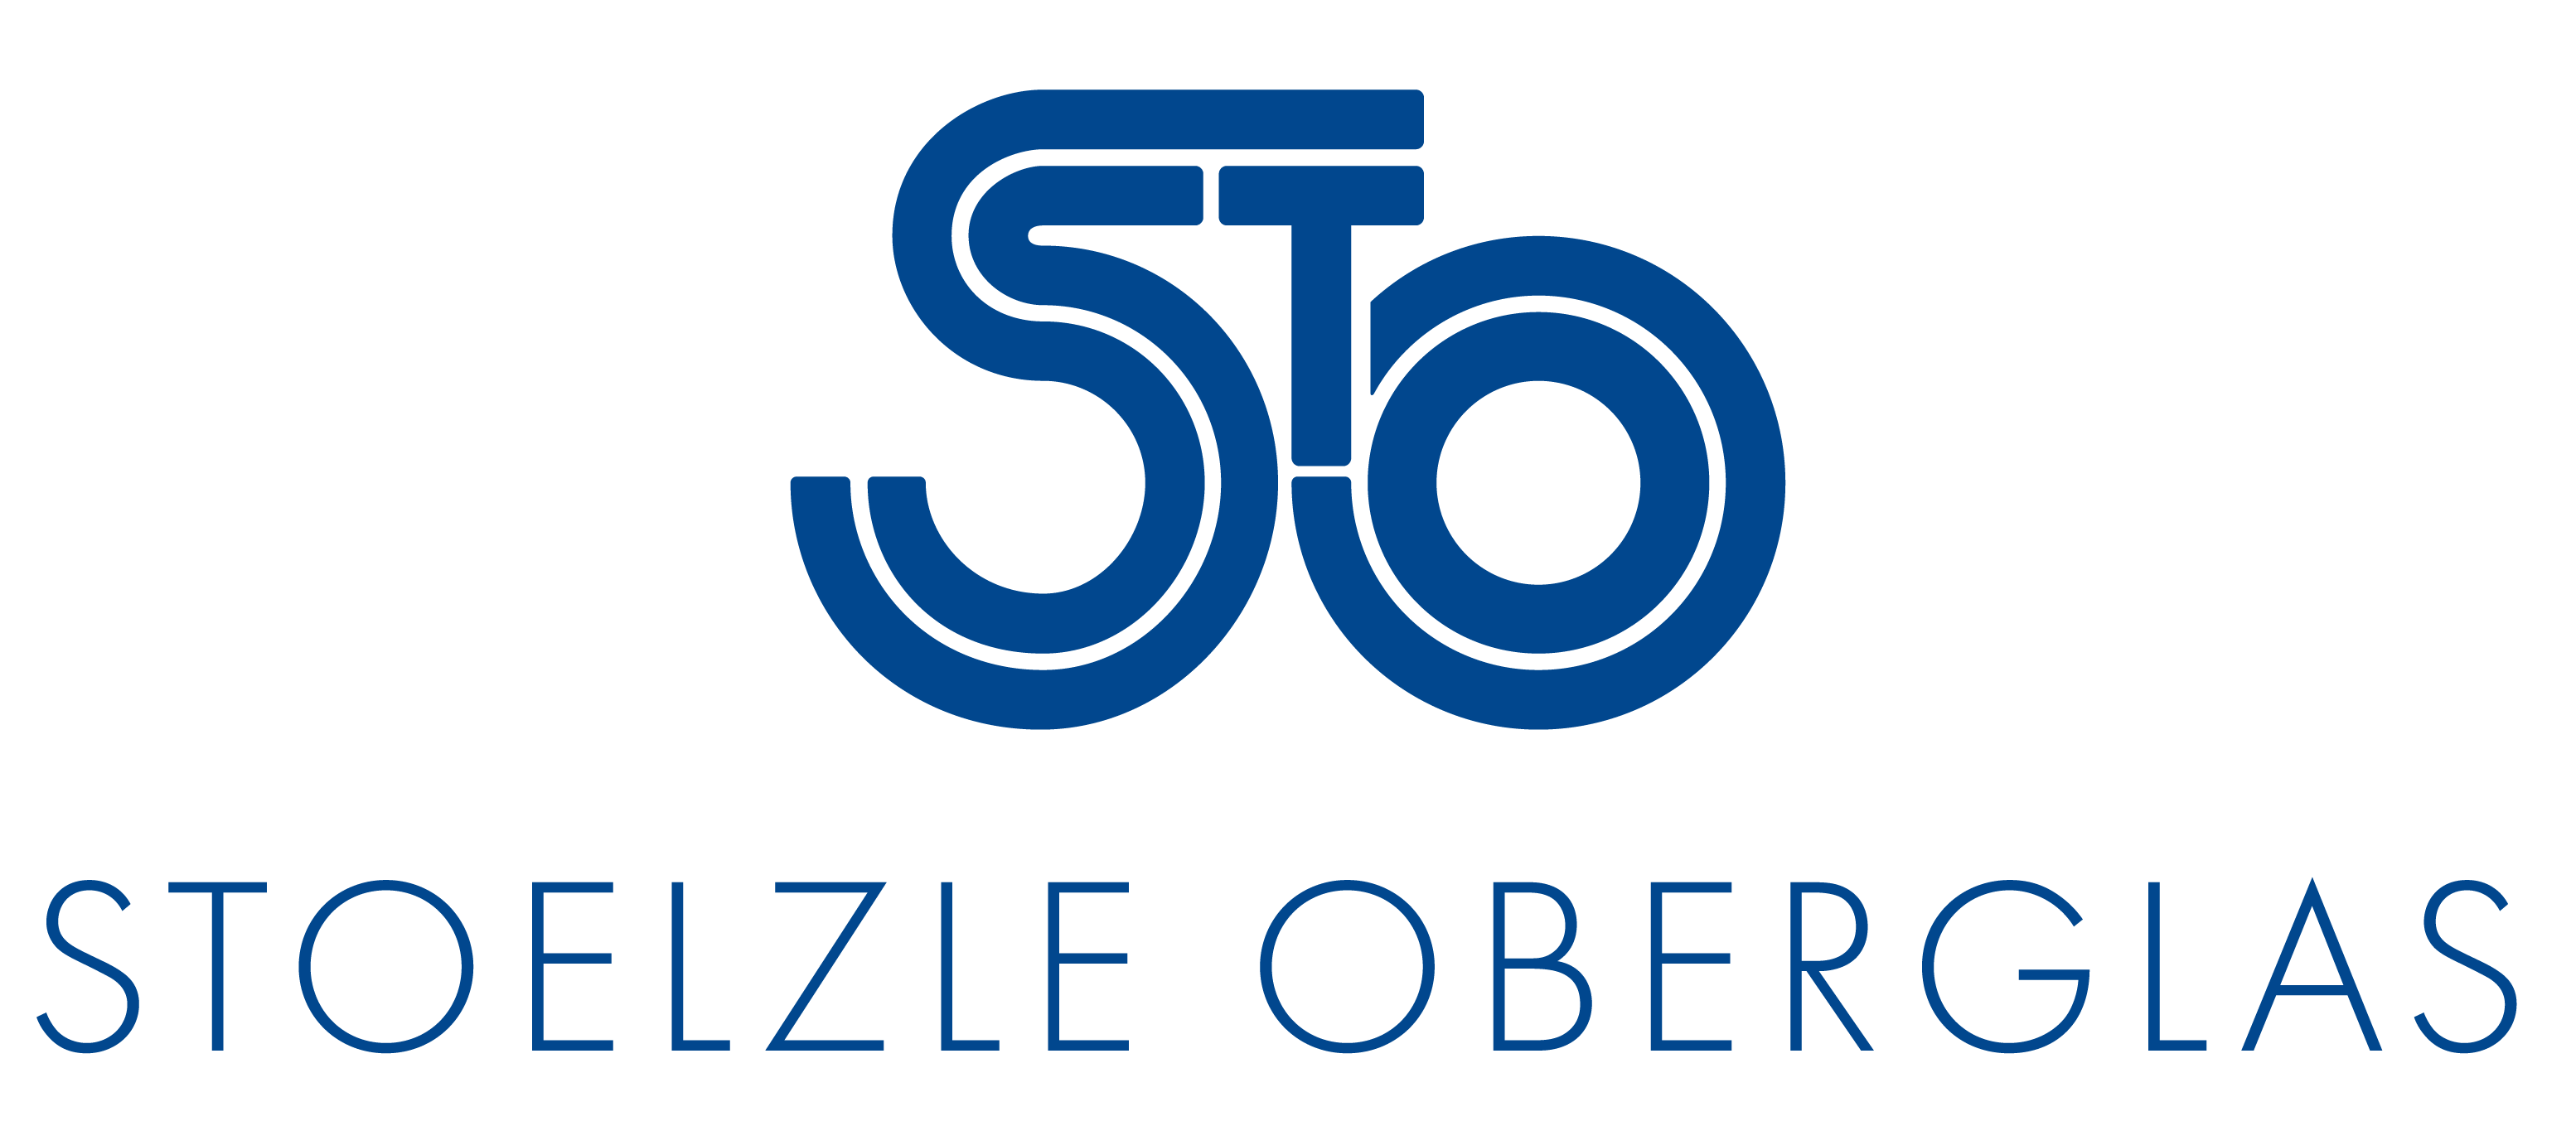 Das Logo von STOELZLE OBERGLAS